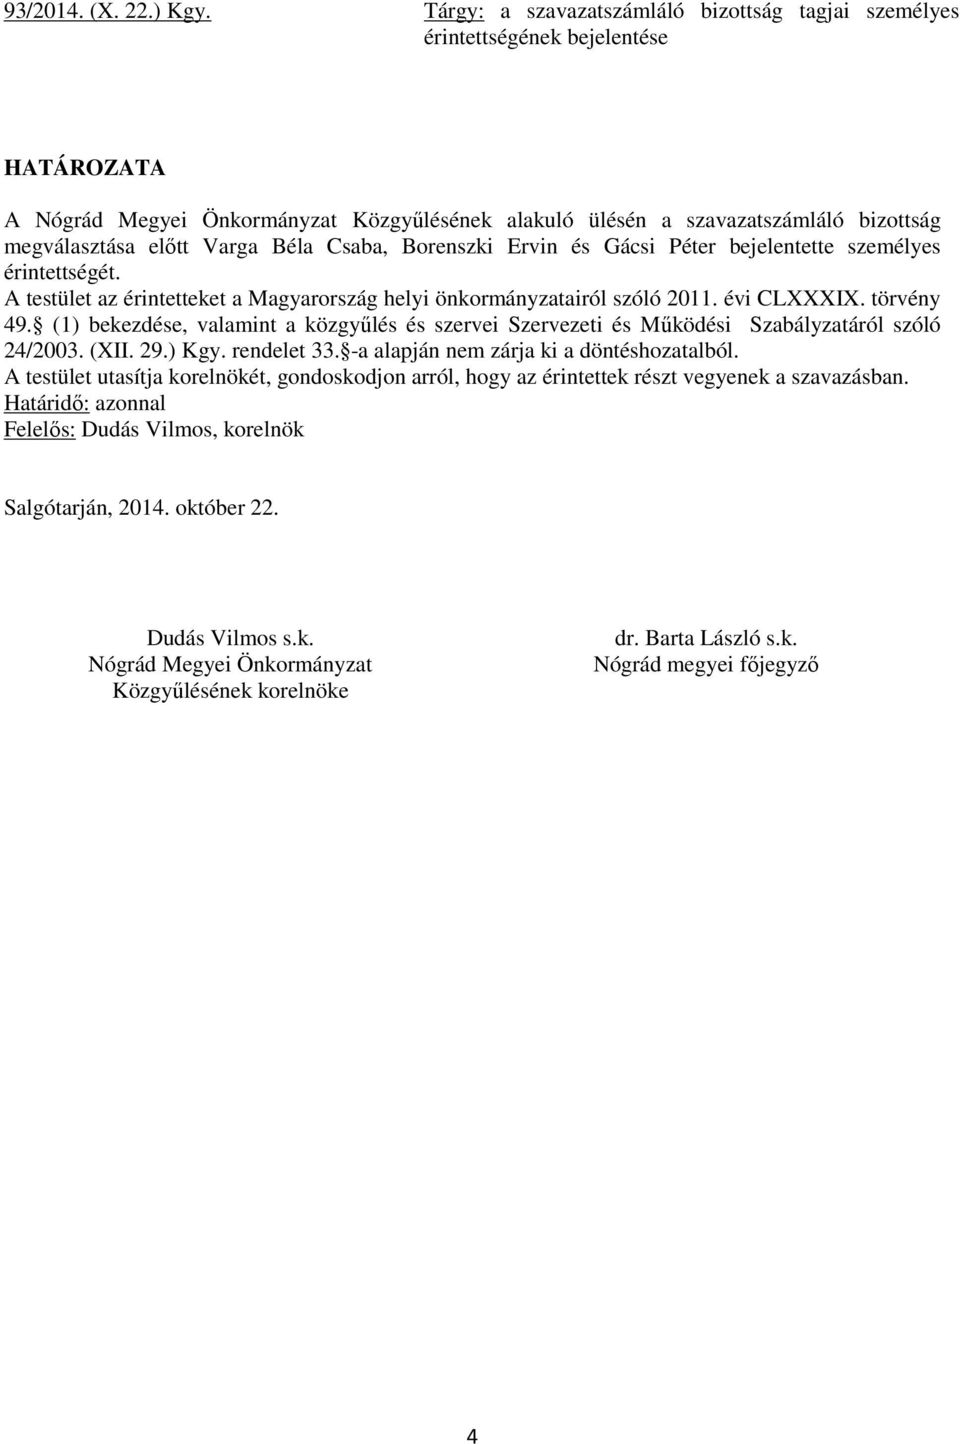 Borenszki Ervin és Gácsi Péter bejelentette személyes érintettségét. A testület az érintetteket a Magyarország helyi önkormányzatairól szóló 2011. évi CLXXXIX. törvény 49.